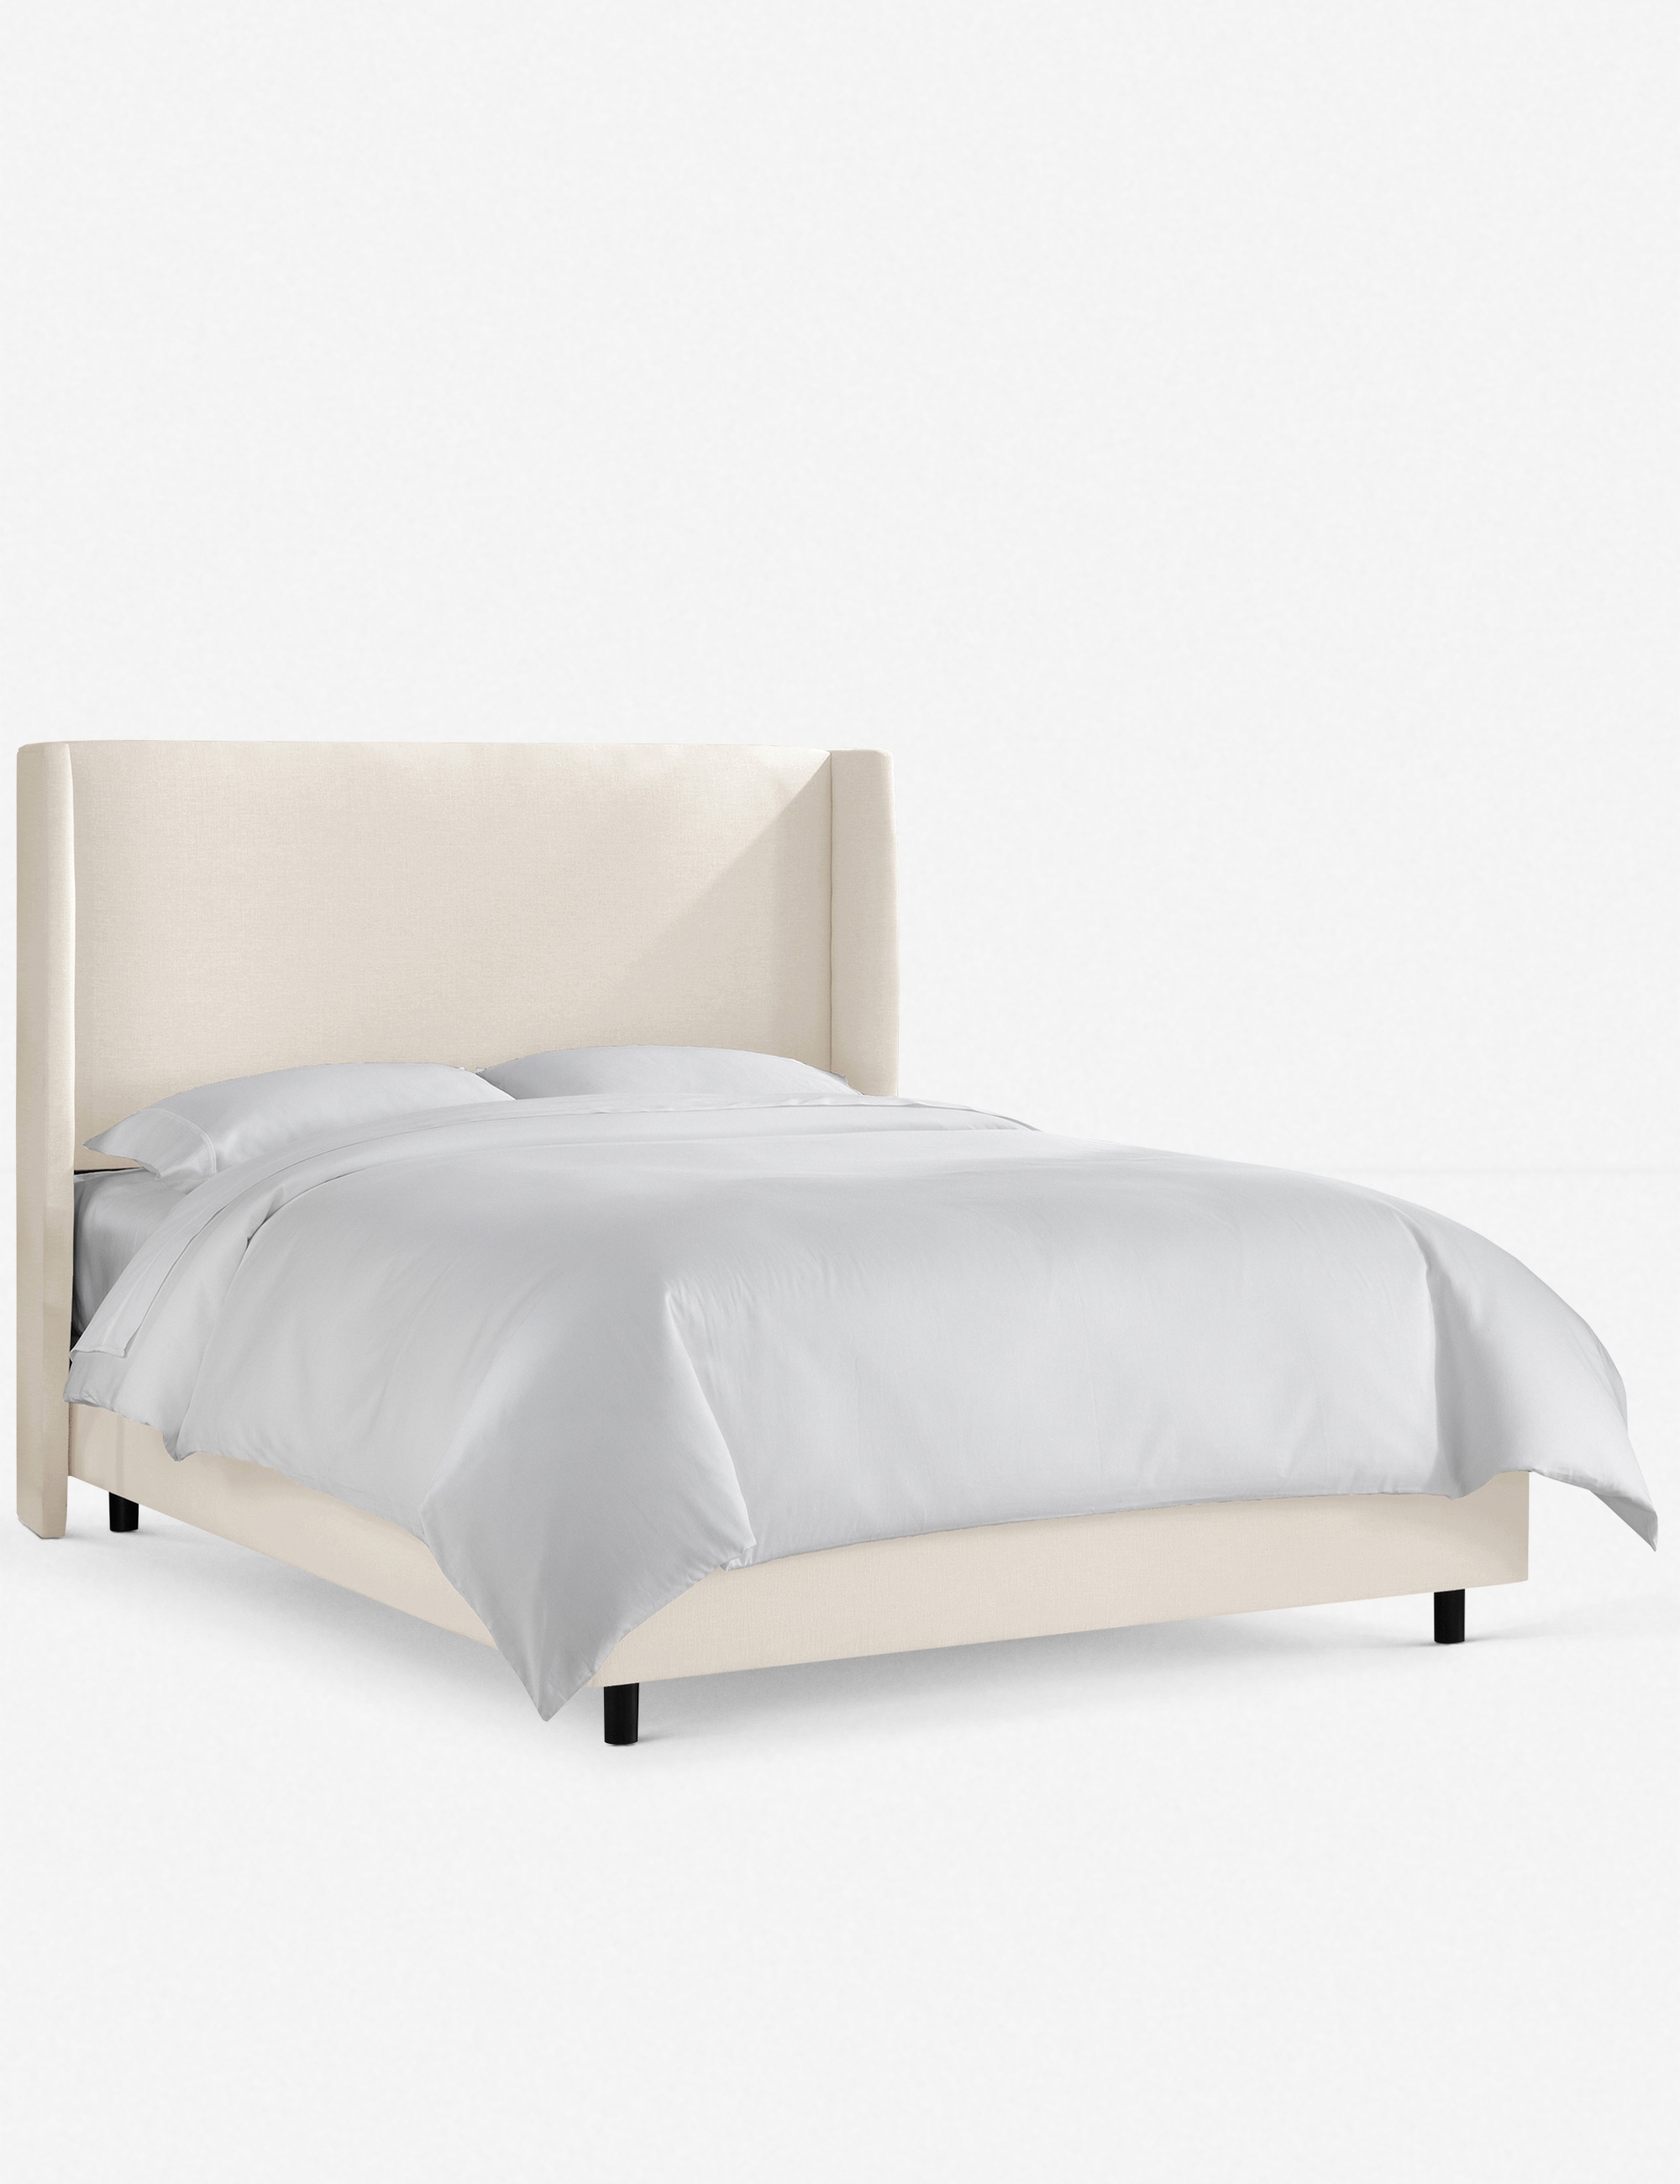 Adara Linen Bed, Talc Queen - Image 0